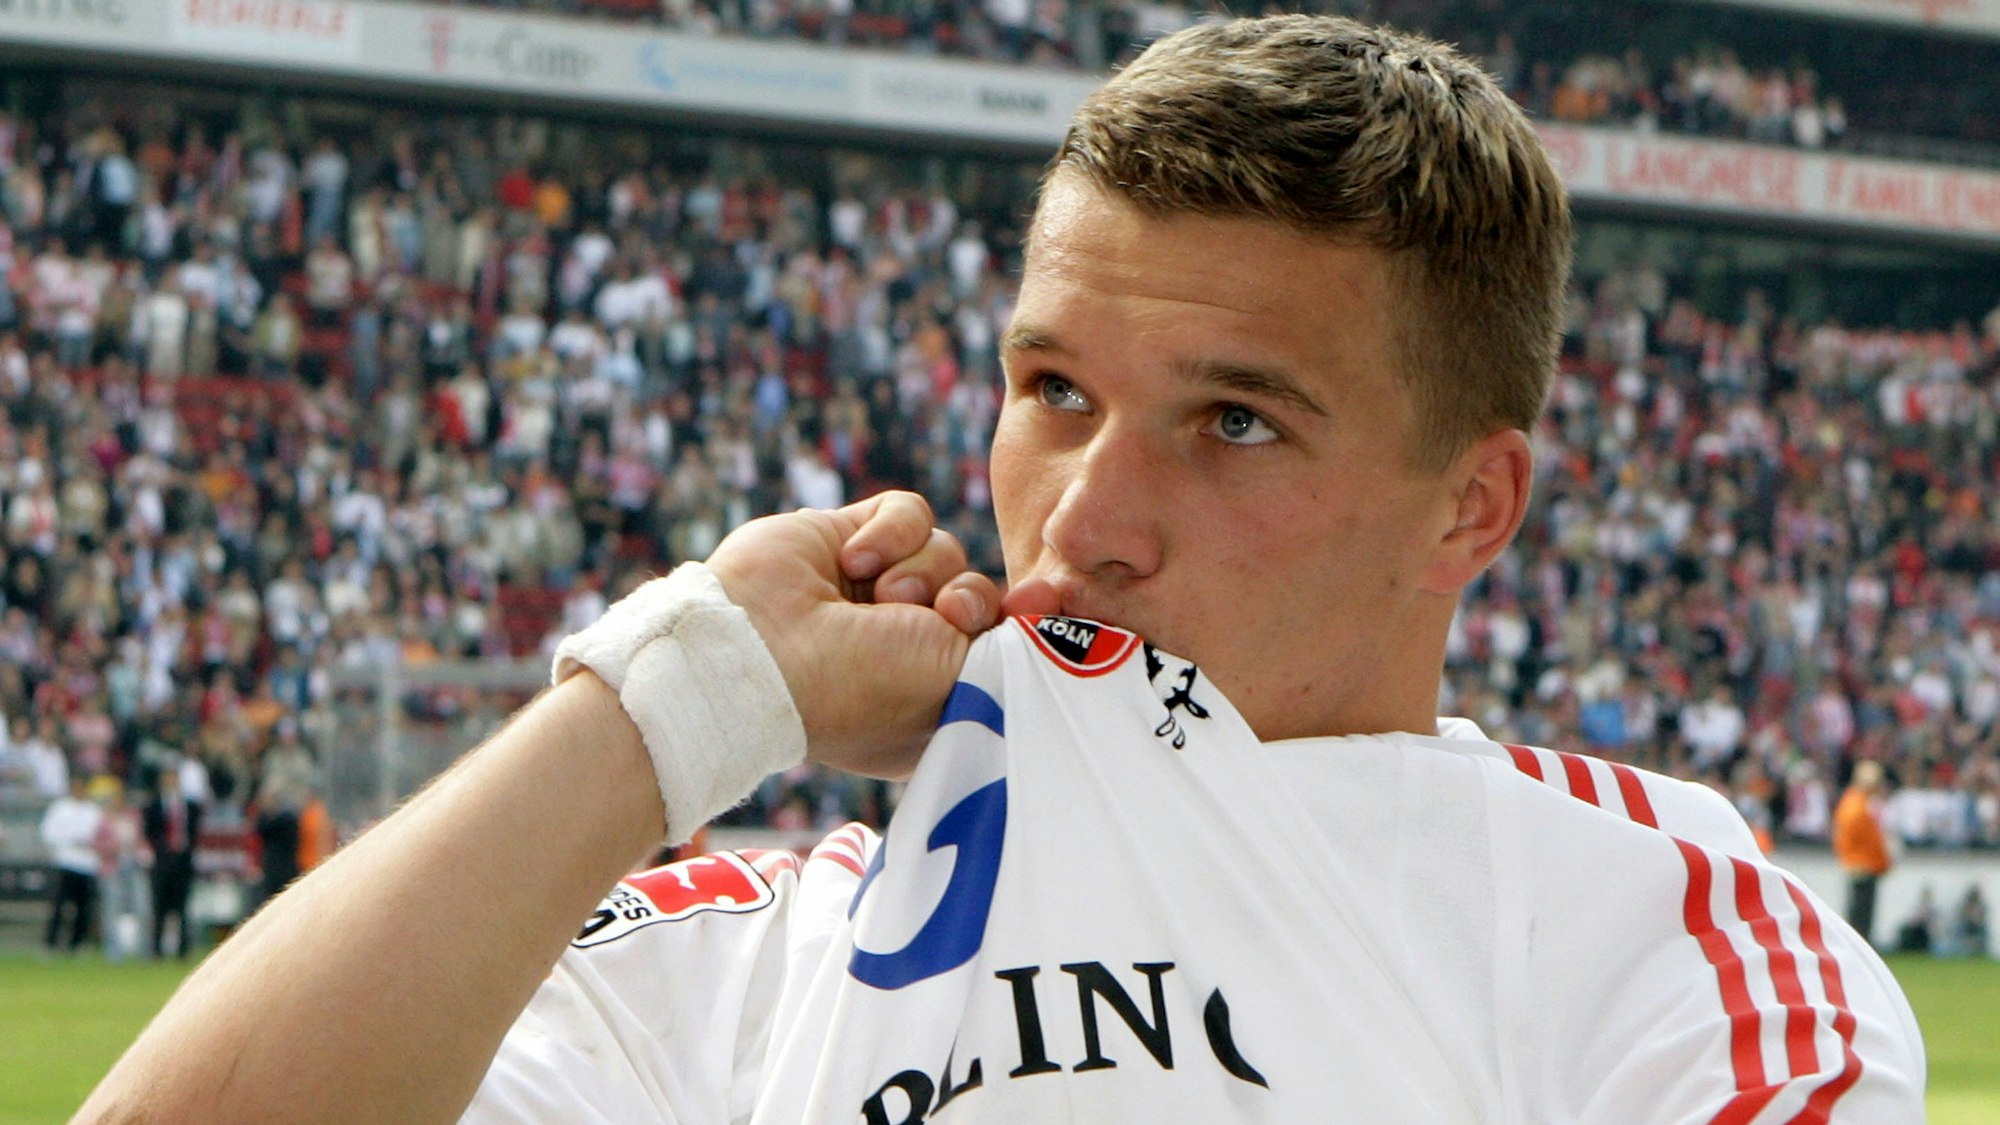 Lukas Podolski küsst das FC-Wappen auf seinem Trikot.